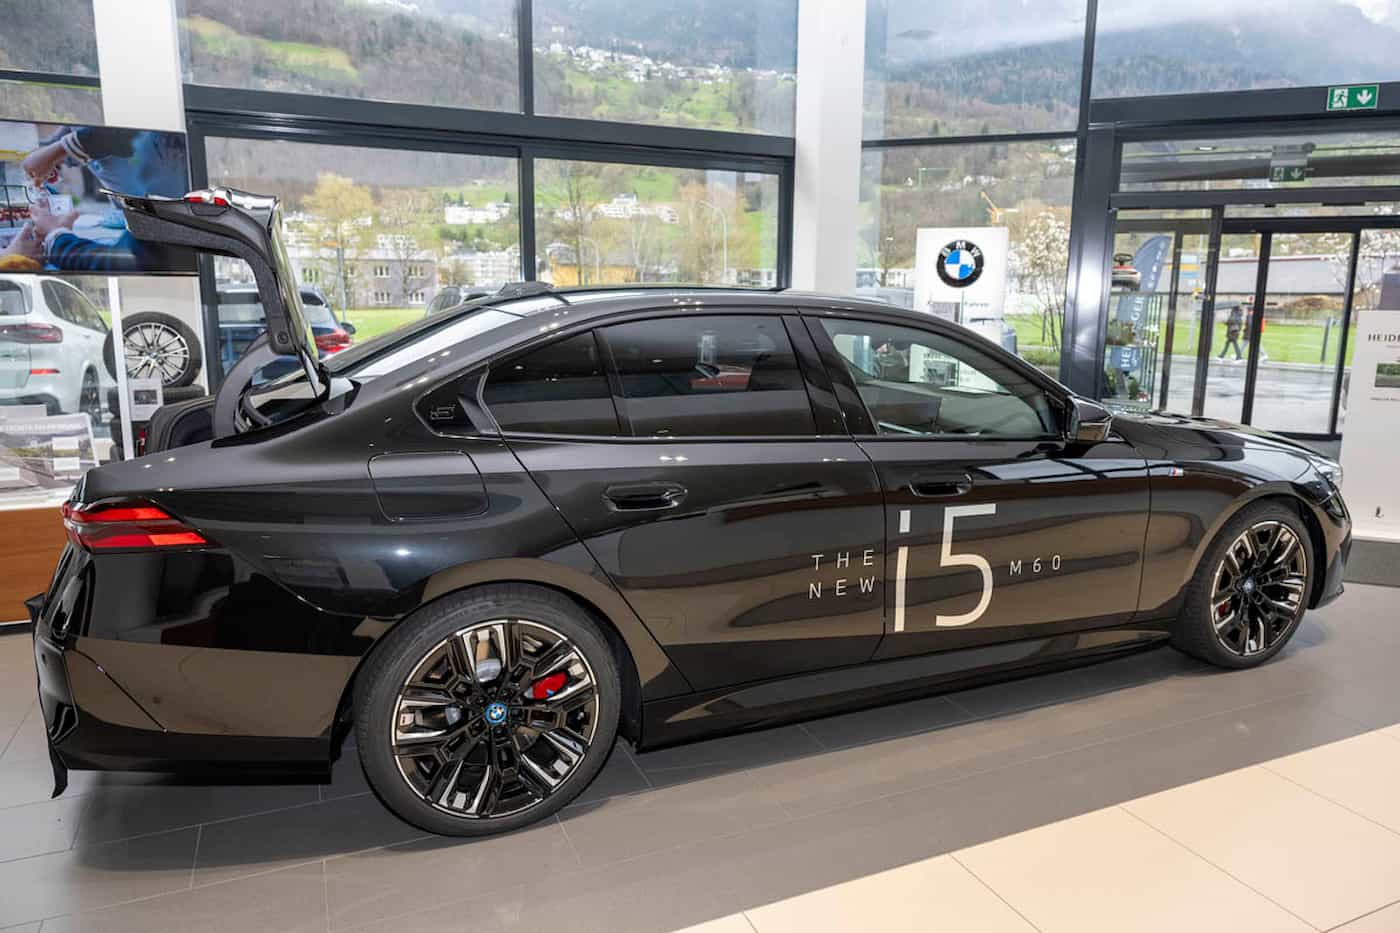 Leistungsstarke Motorisierung und sportliche Fahrdynamik: Der neue BMW i5 M60 xDrive bietet die typische Performance eines BMW M - vollelektrisch.